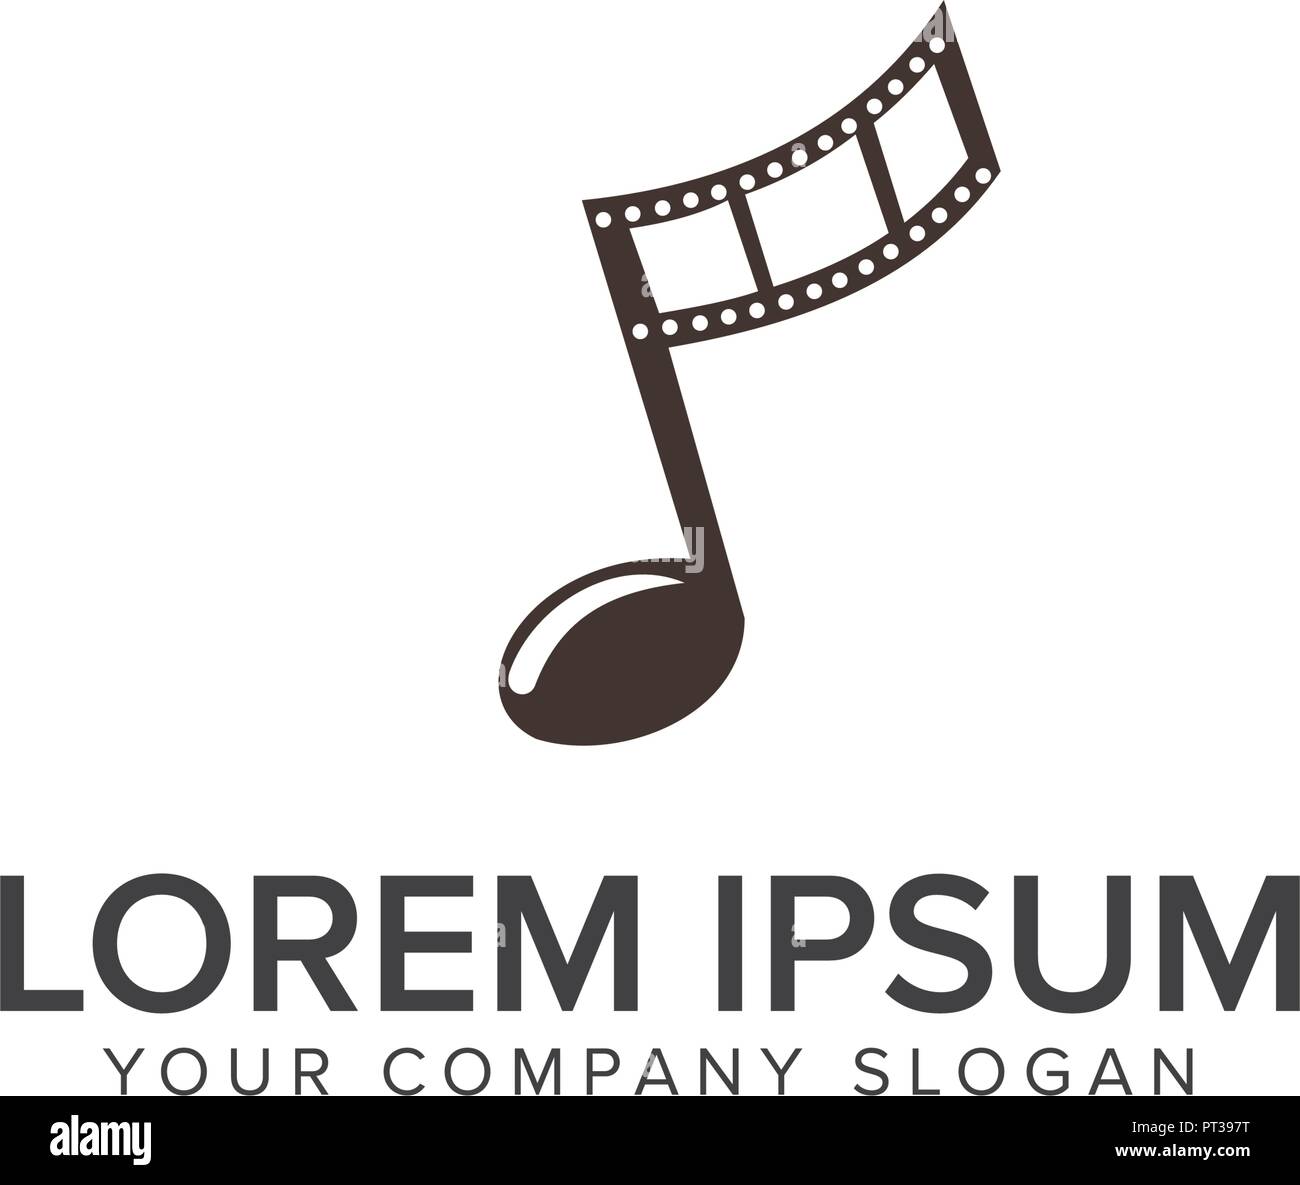 Entertainment music video logo design concept template Stock Vector